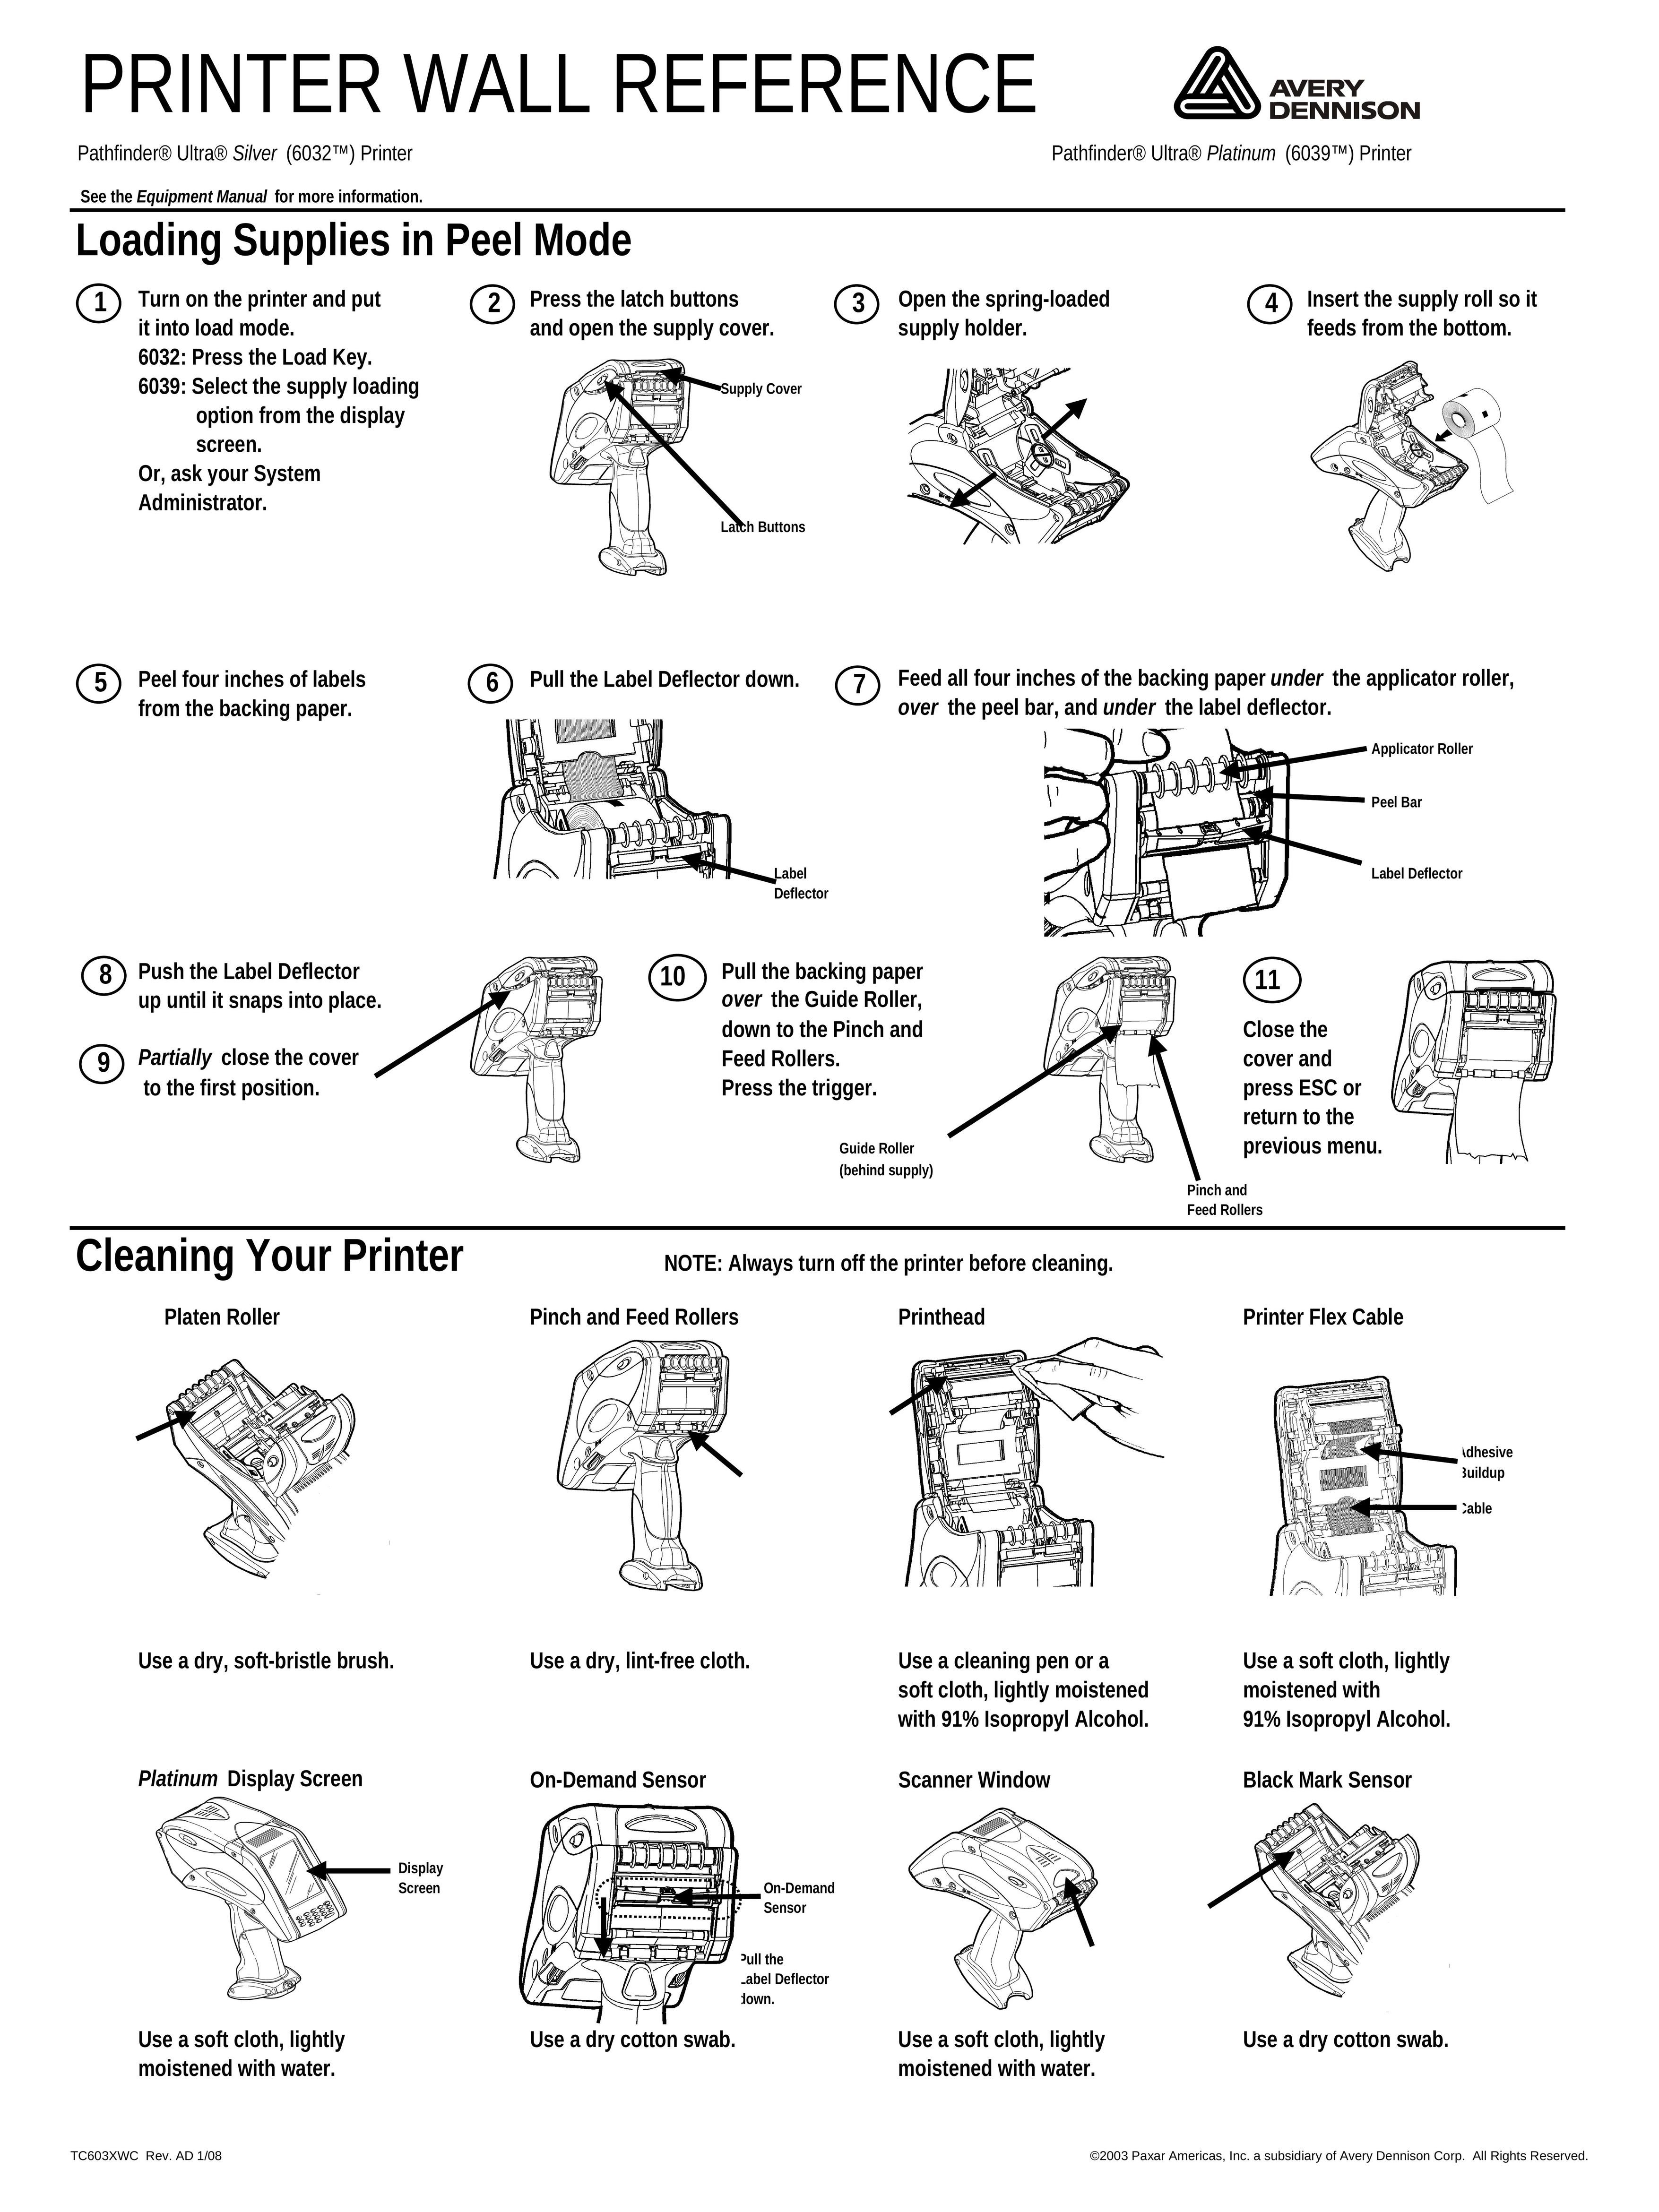 Paxar 6039TM Printer User Manual